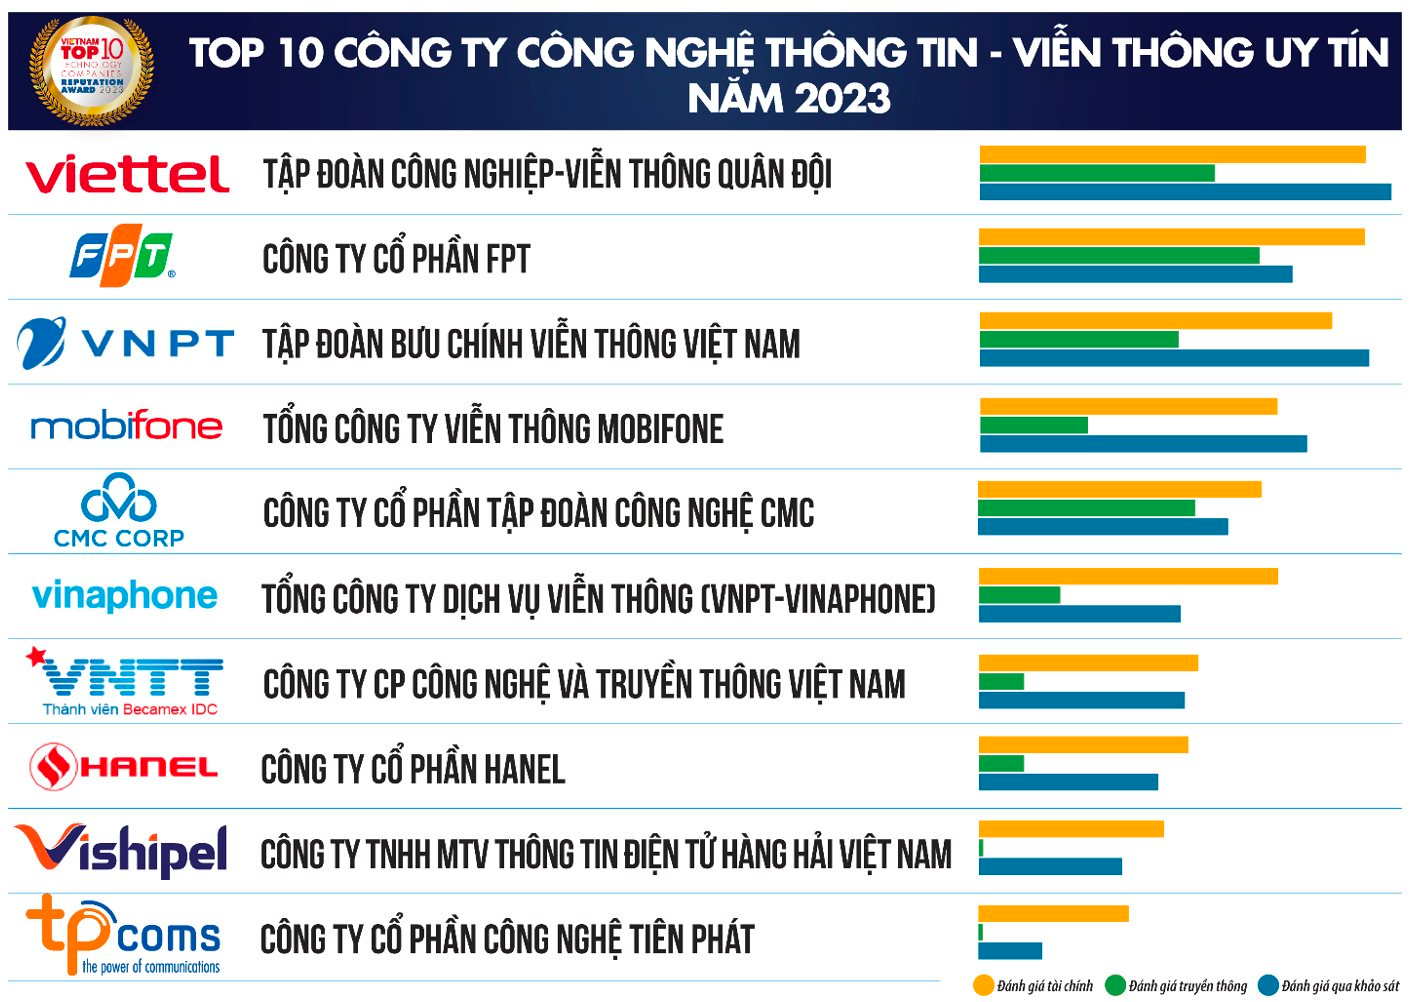 Viettel chắc chân đầu bảng top công ty công nghệ uy tín, Mobifone và CMC Corp &quot;đá&quot; Vinafone xuống tận vị trí thứ 6 - Ảnh 1.